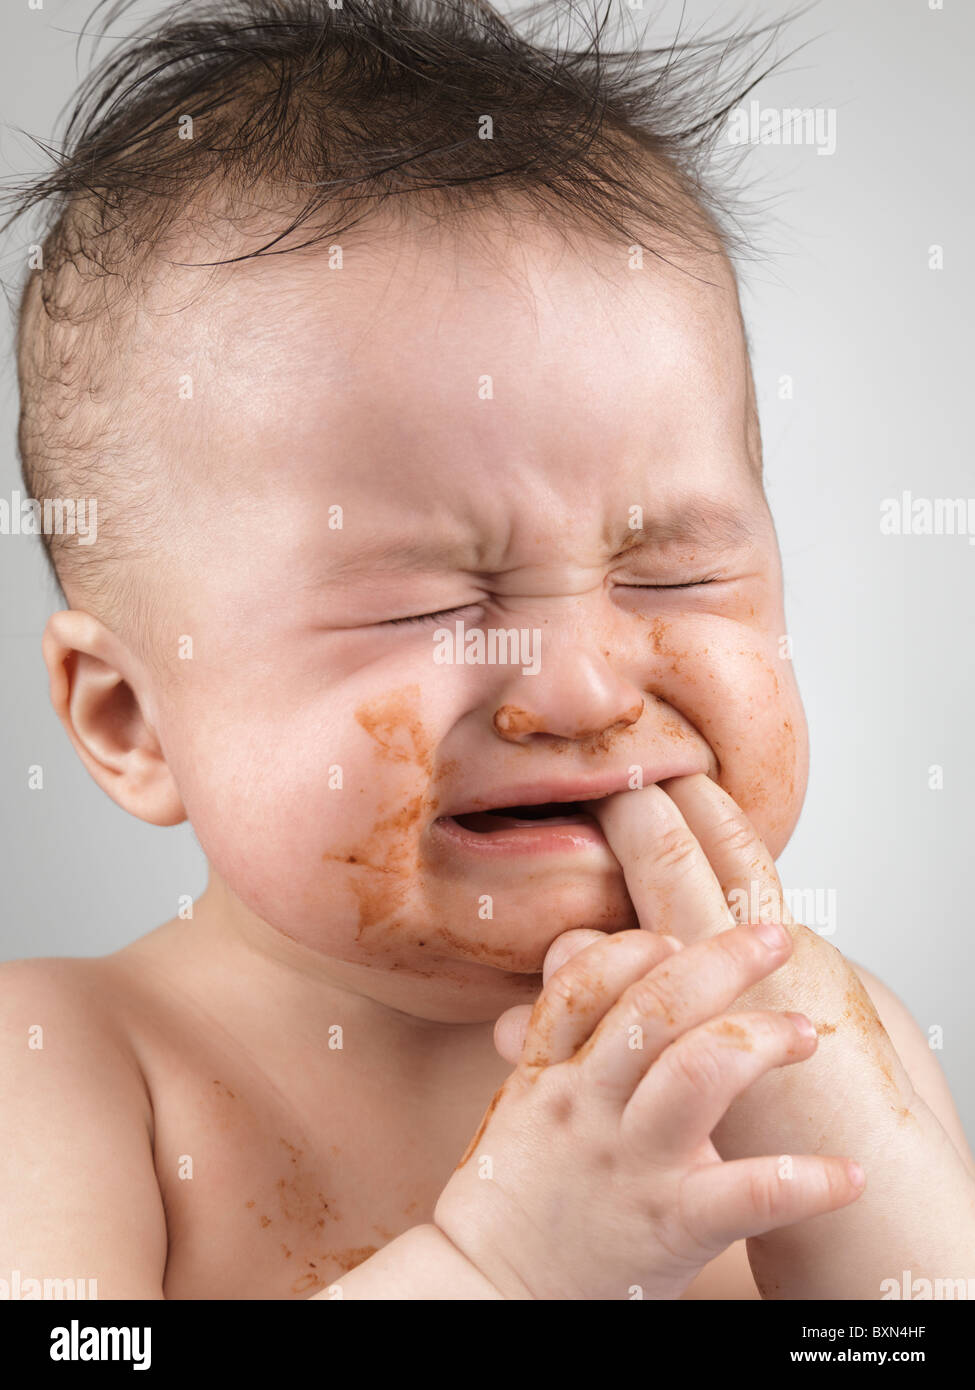 Lizenz erhältlich unter MaximImages.com - künstlerisches Porträt eines weinenden siebenmonatigen Jungen mit unordentlichen Haaren und mit Nahrungsgesicht verschmiert Stockfoto